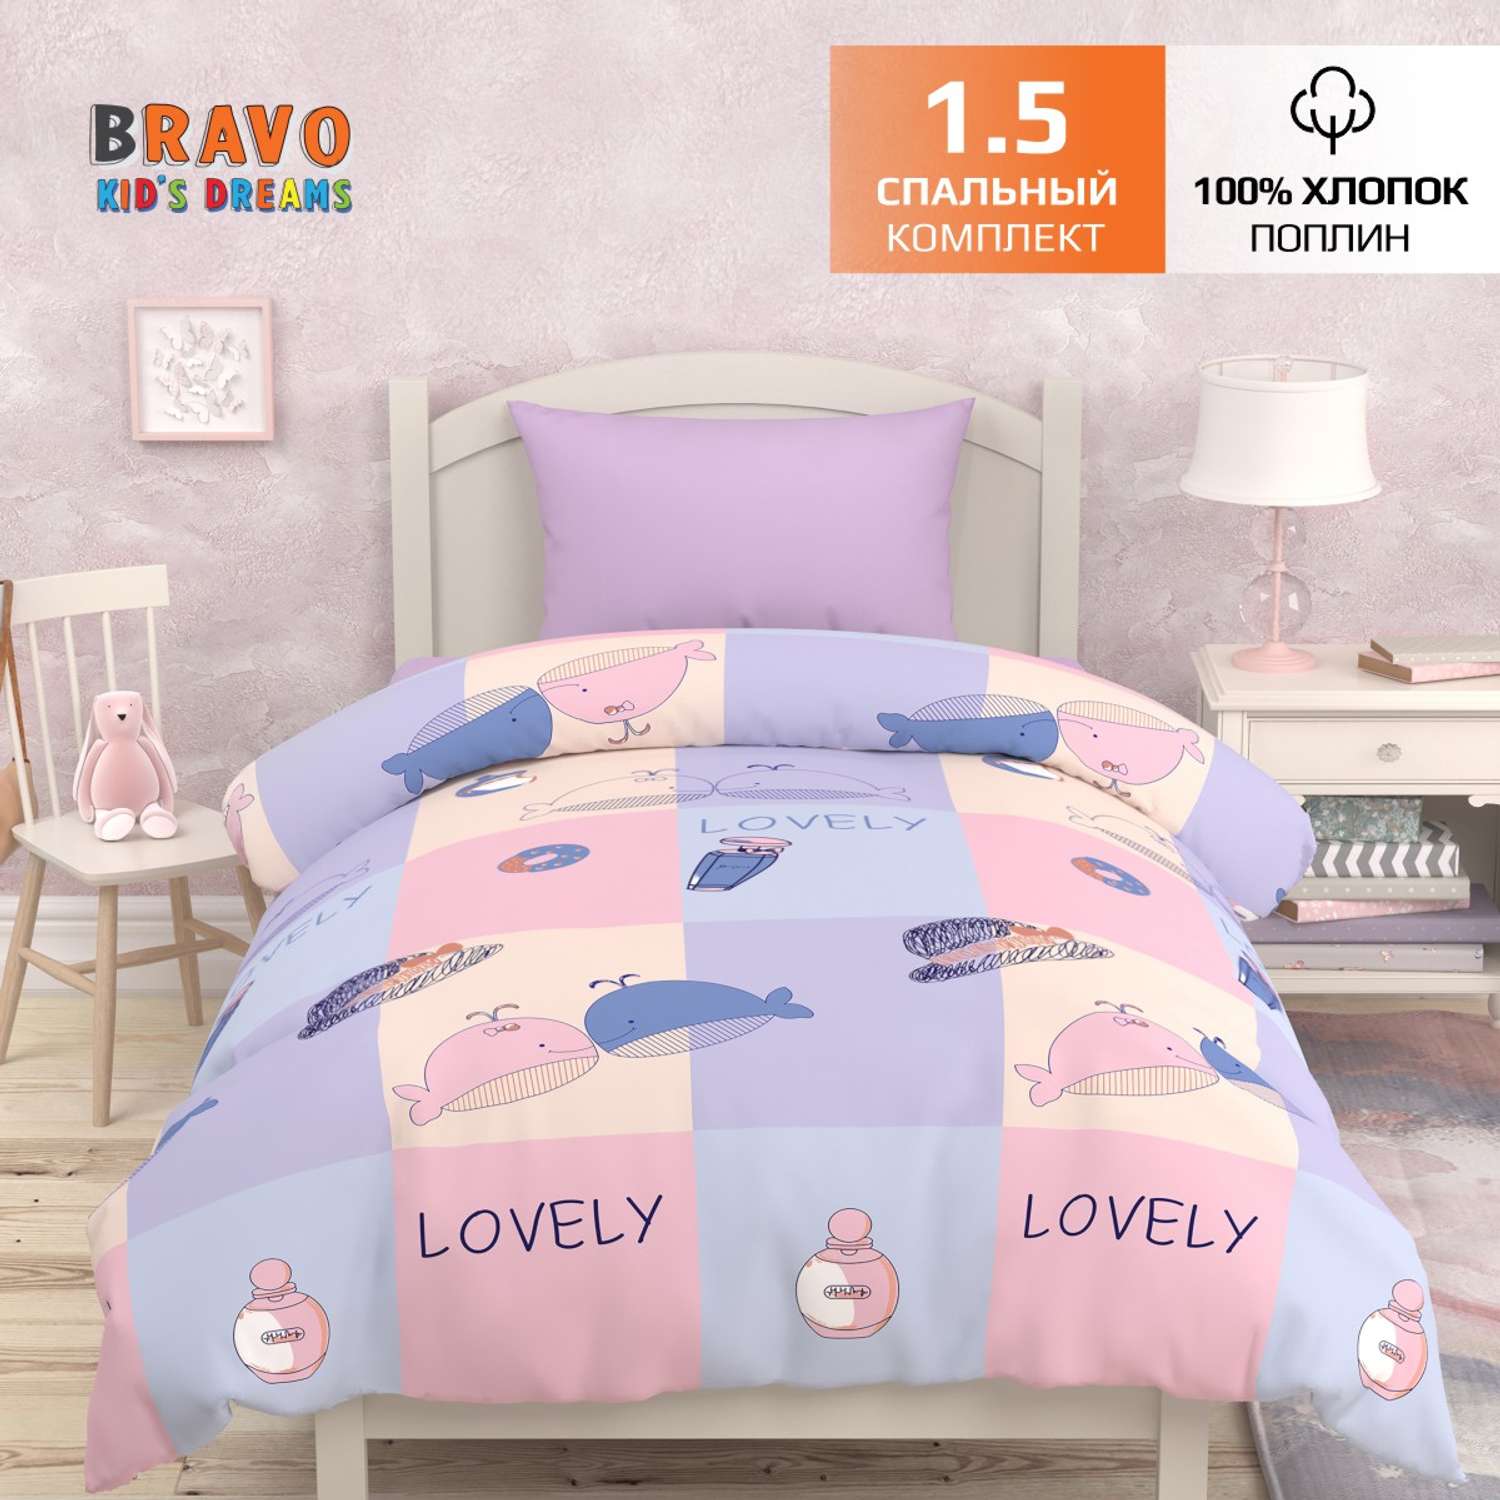 Комплект постельного белья BRAVO kids dreams Киты 1.5 спальный простыня на резинке 90х200 - фото 1